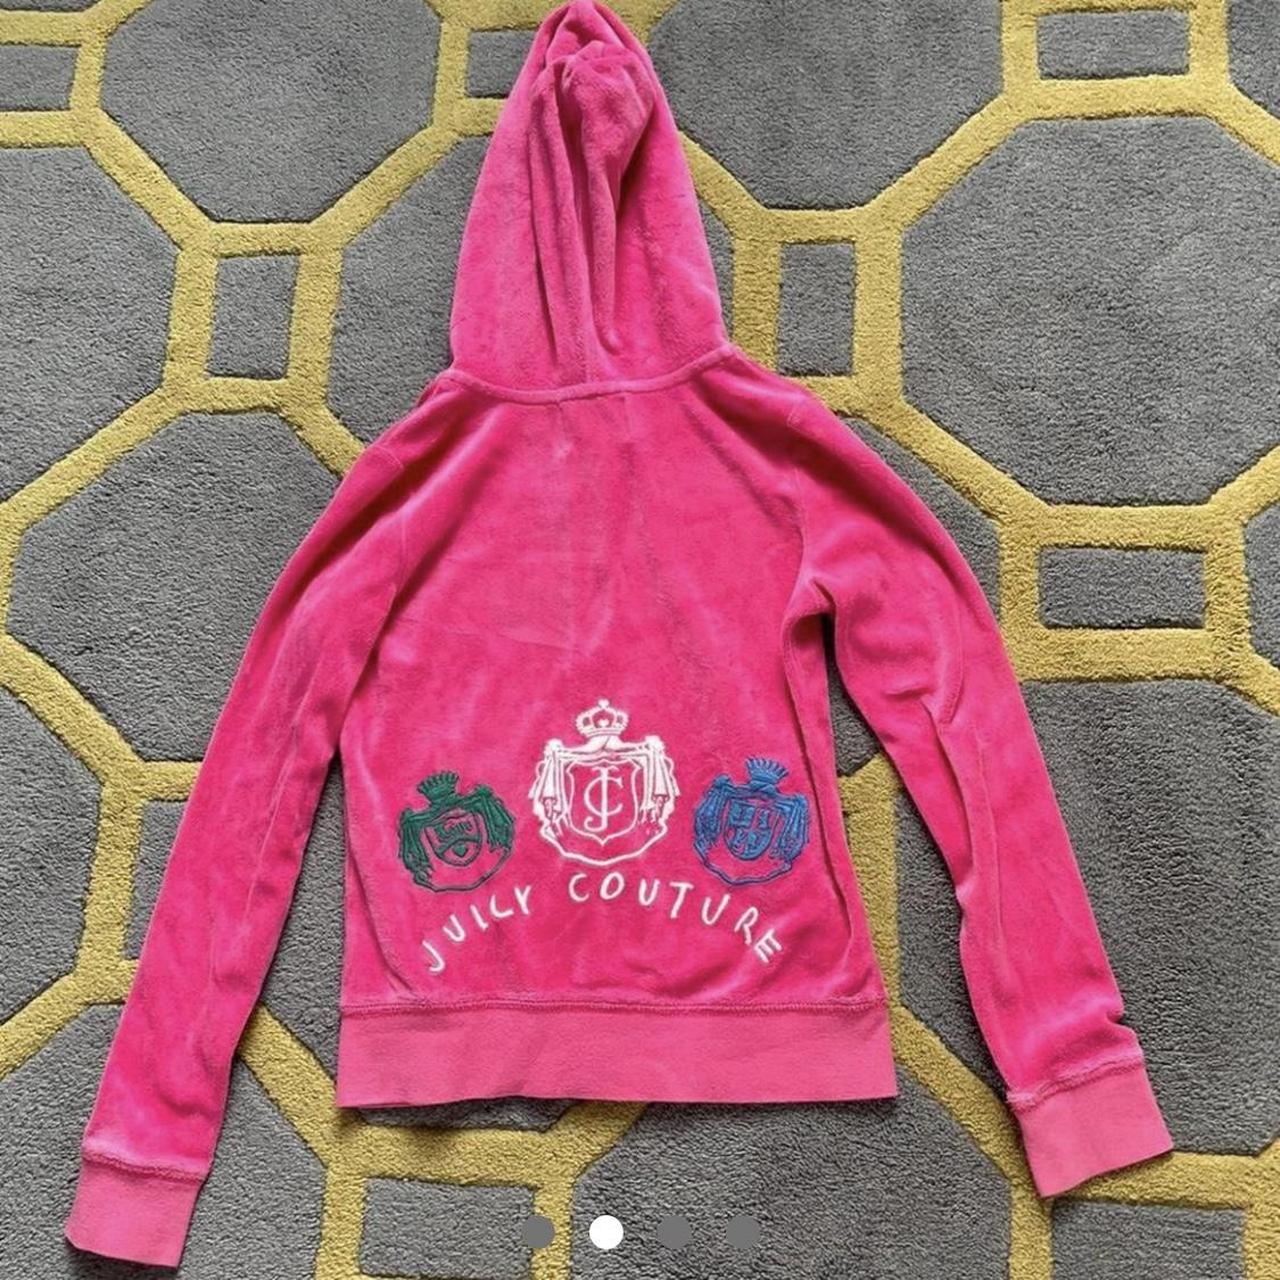 🌸🌸 Pink juicy couture hoodie 🌸🌸 so nice but selling... - Depop